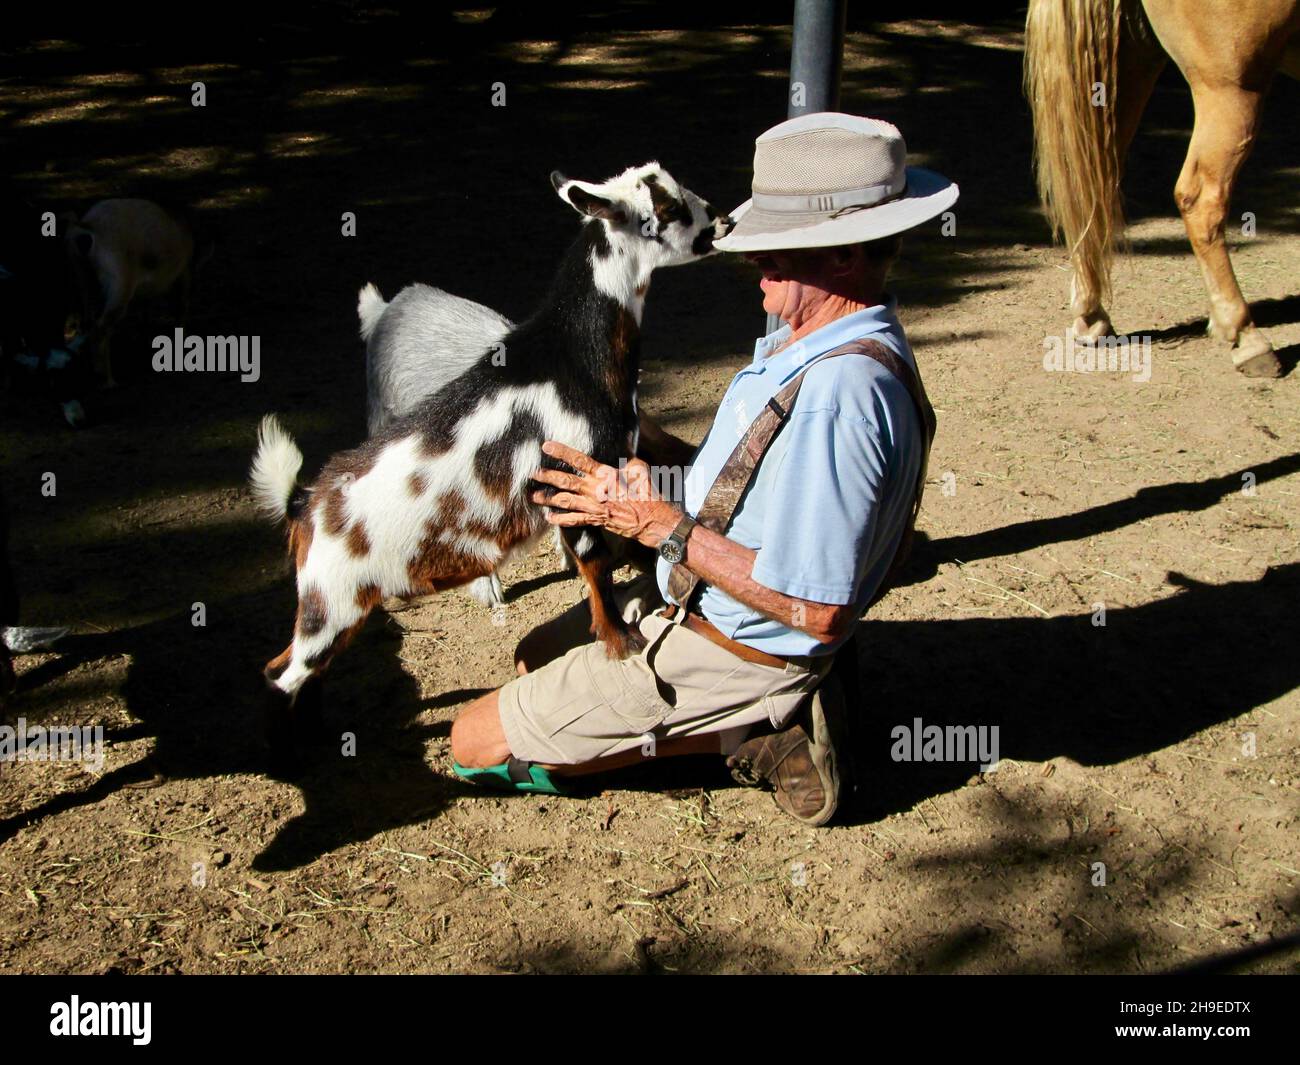 Una pequeña cabra doméstica se afirma subiendo al regazo de un hombre y agarra el borde de su sombrero con su boca. Foto de stock